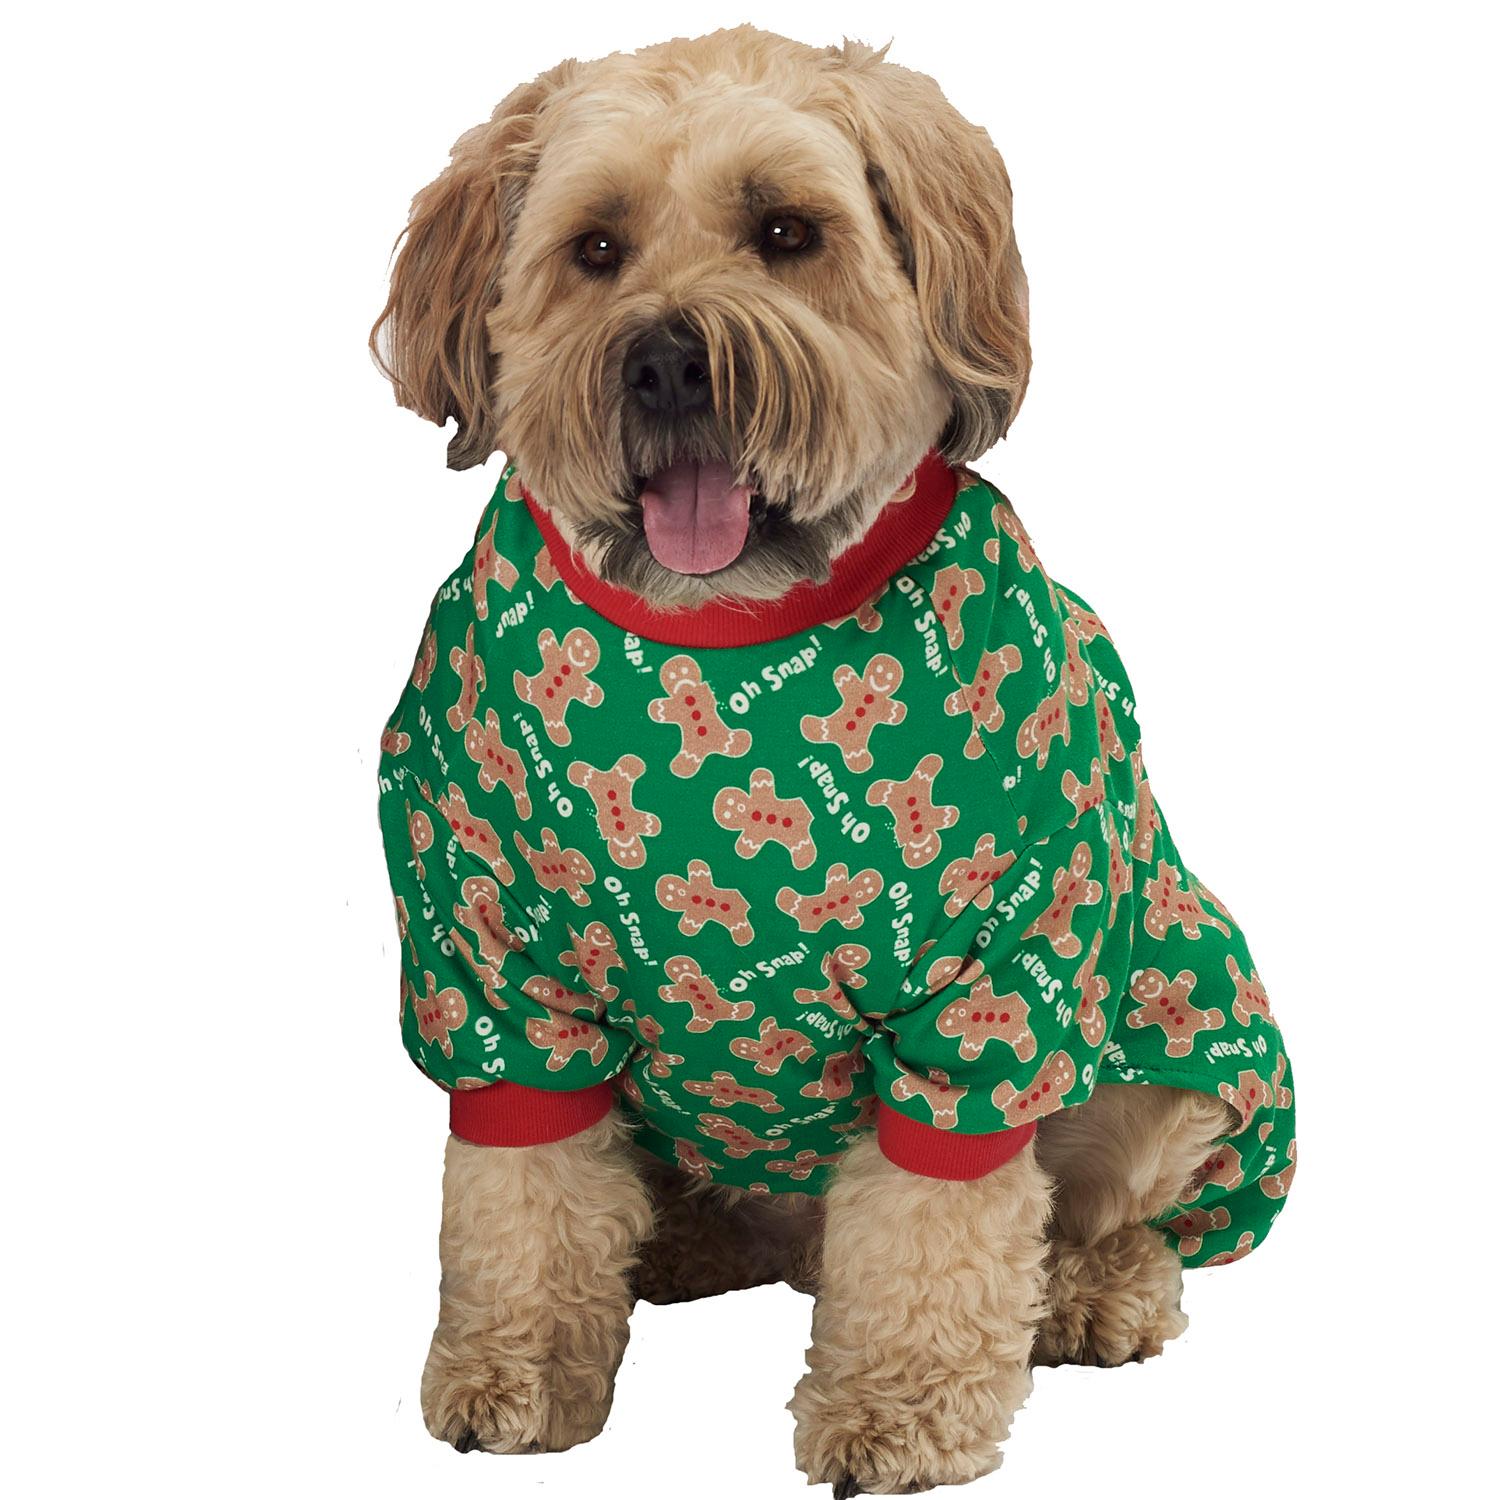 Petrageous Oh Snap! Gingerbread Dog Pajamas - Green